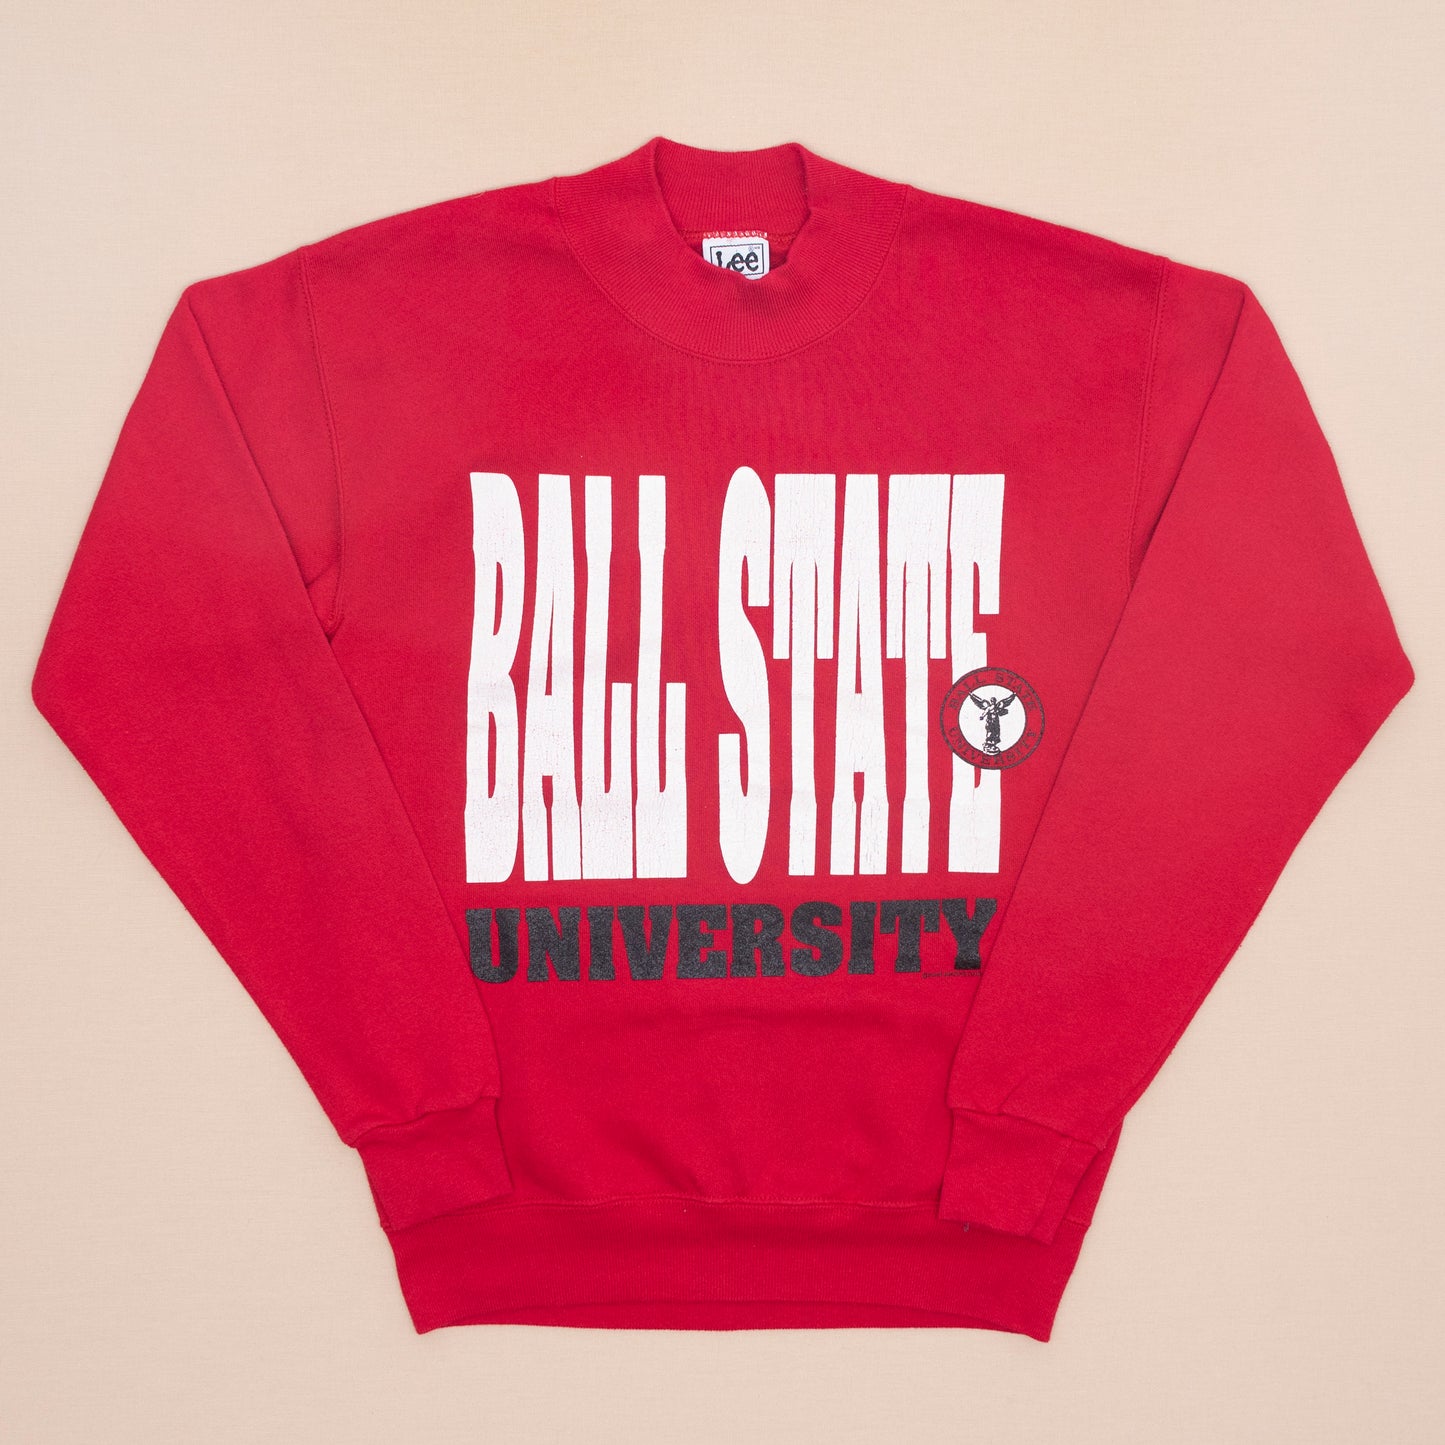 Ball State University Sweater, S-M